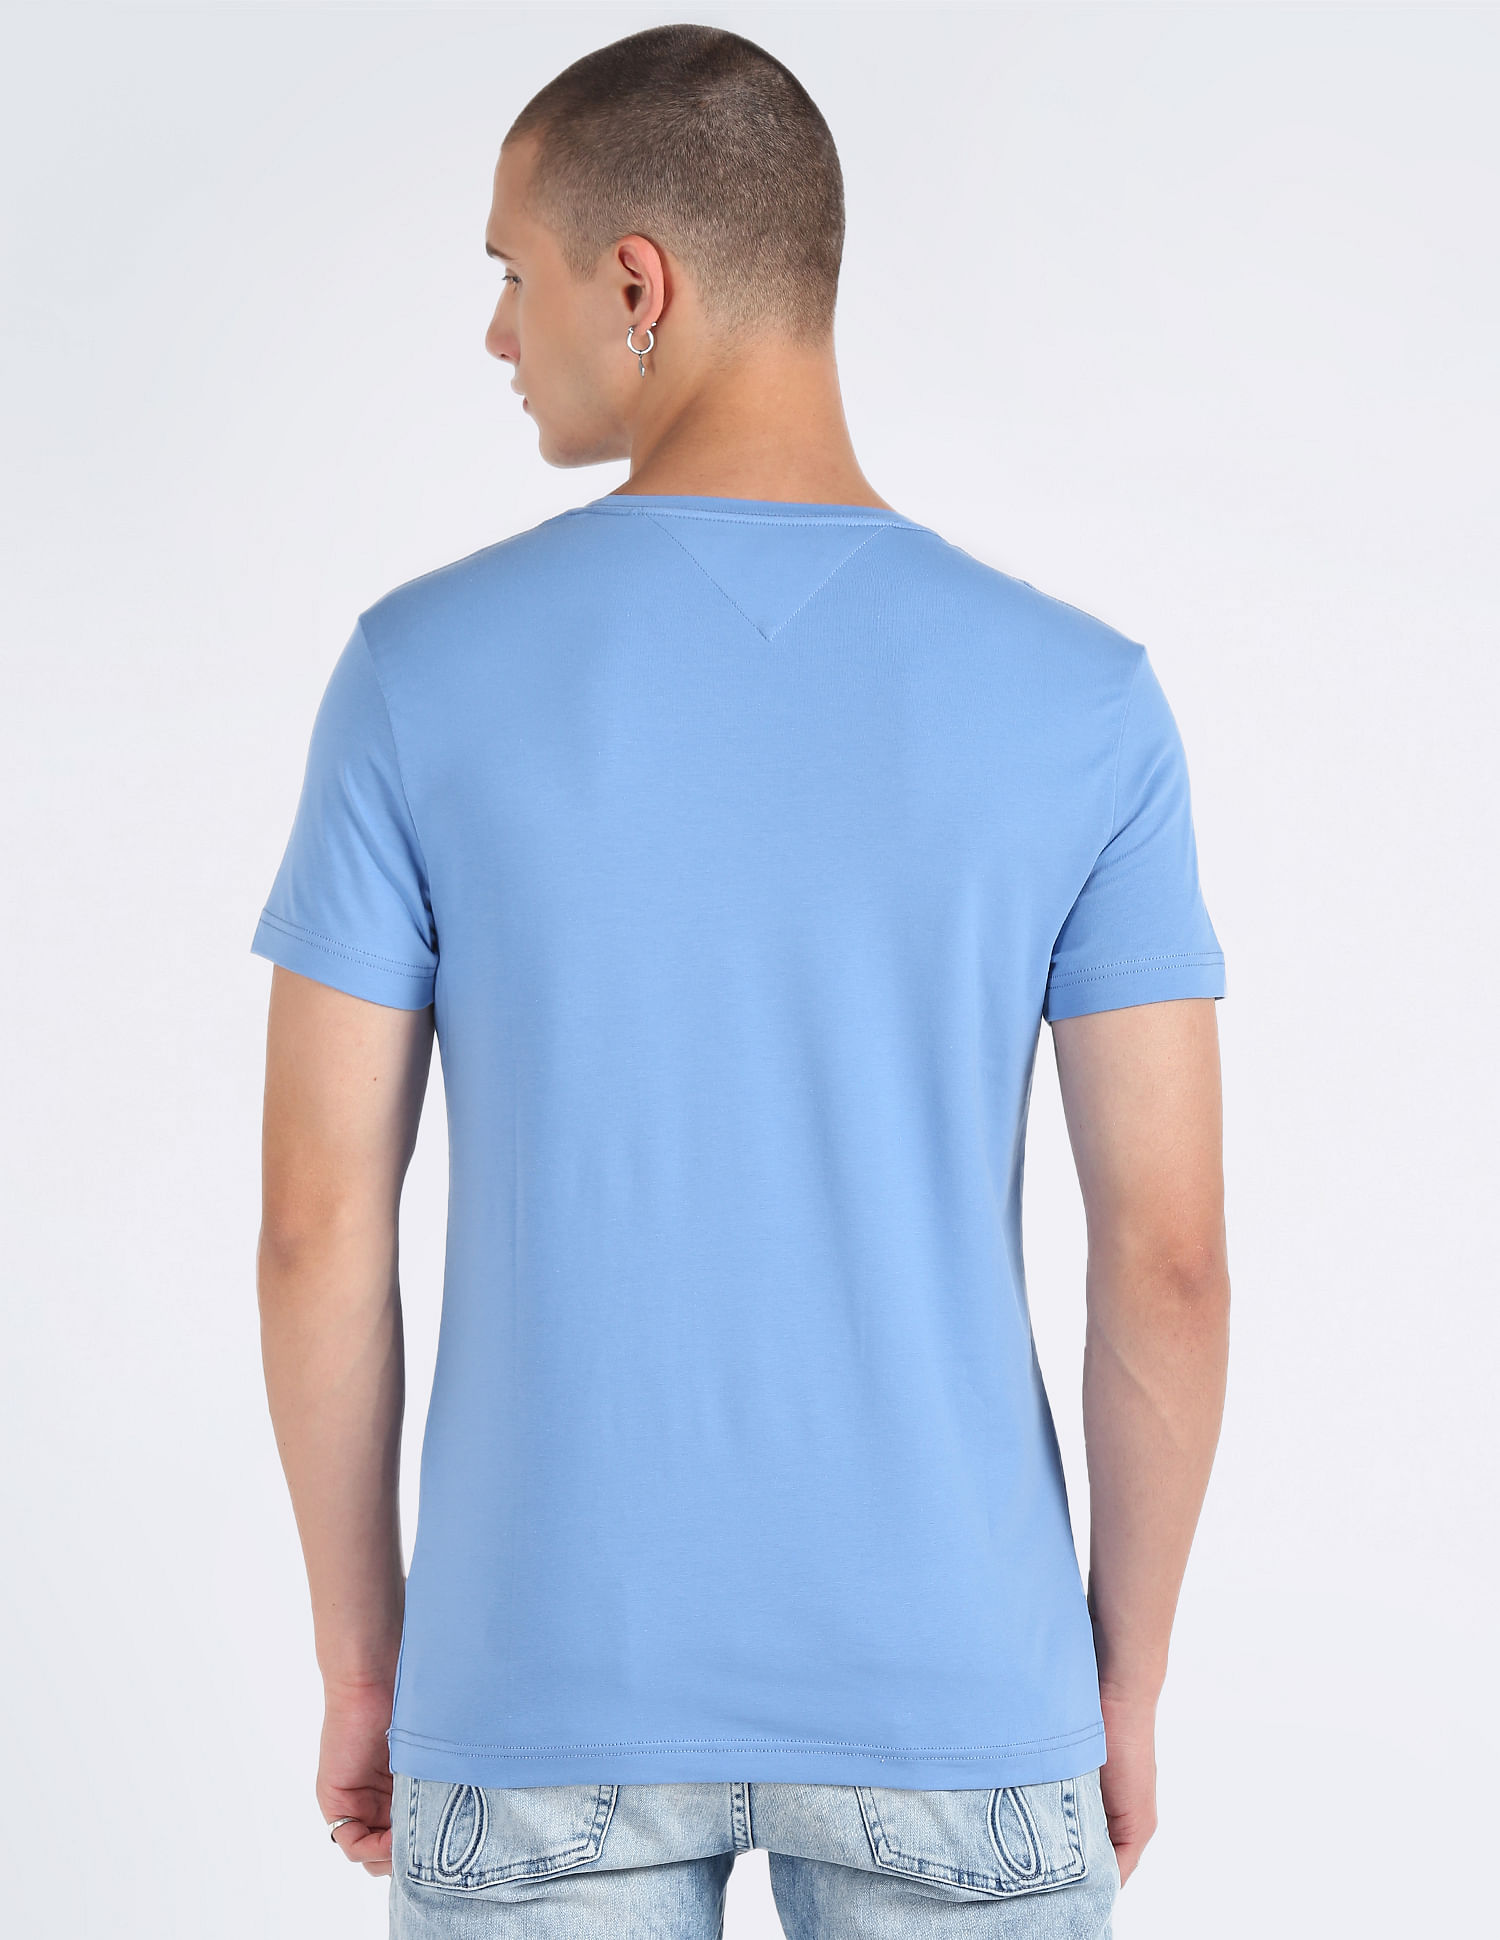 Light blue Tommy Hilfiger tee shirt / tshirt, men's branded designer –  System F